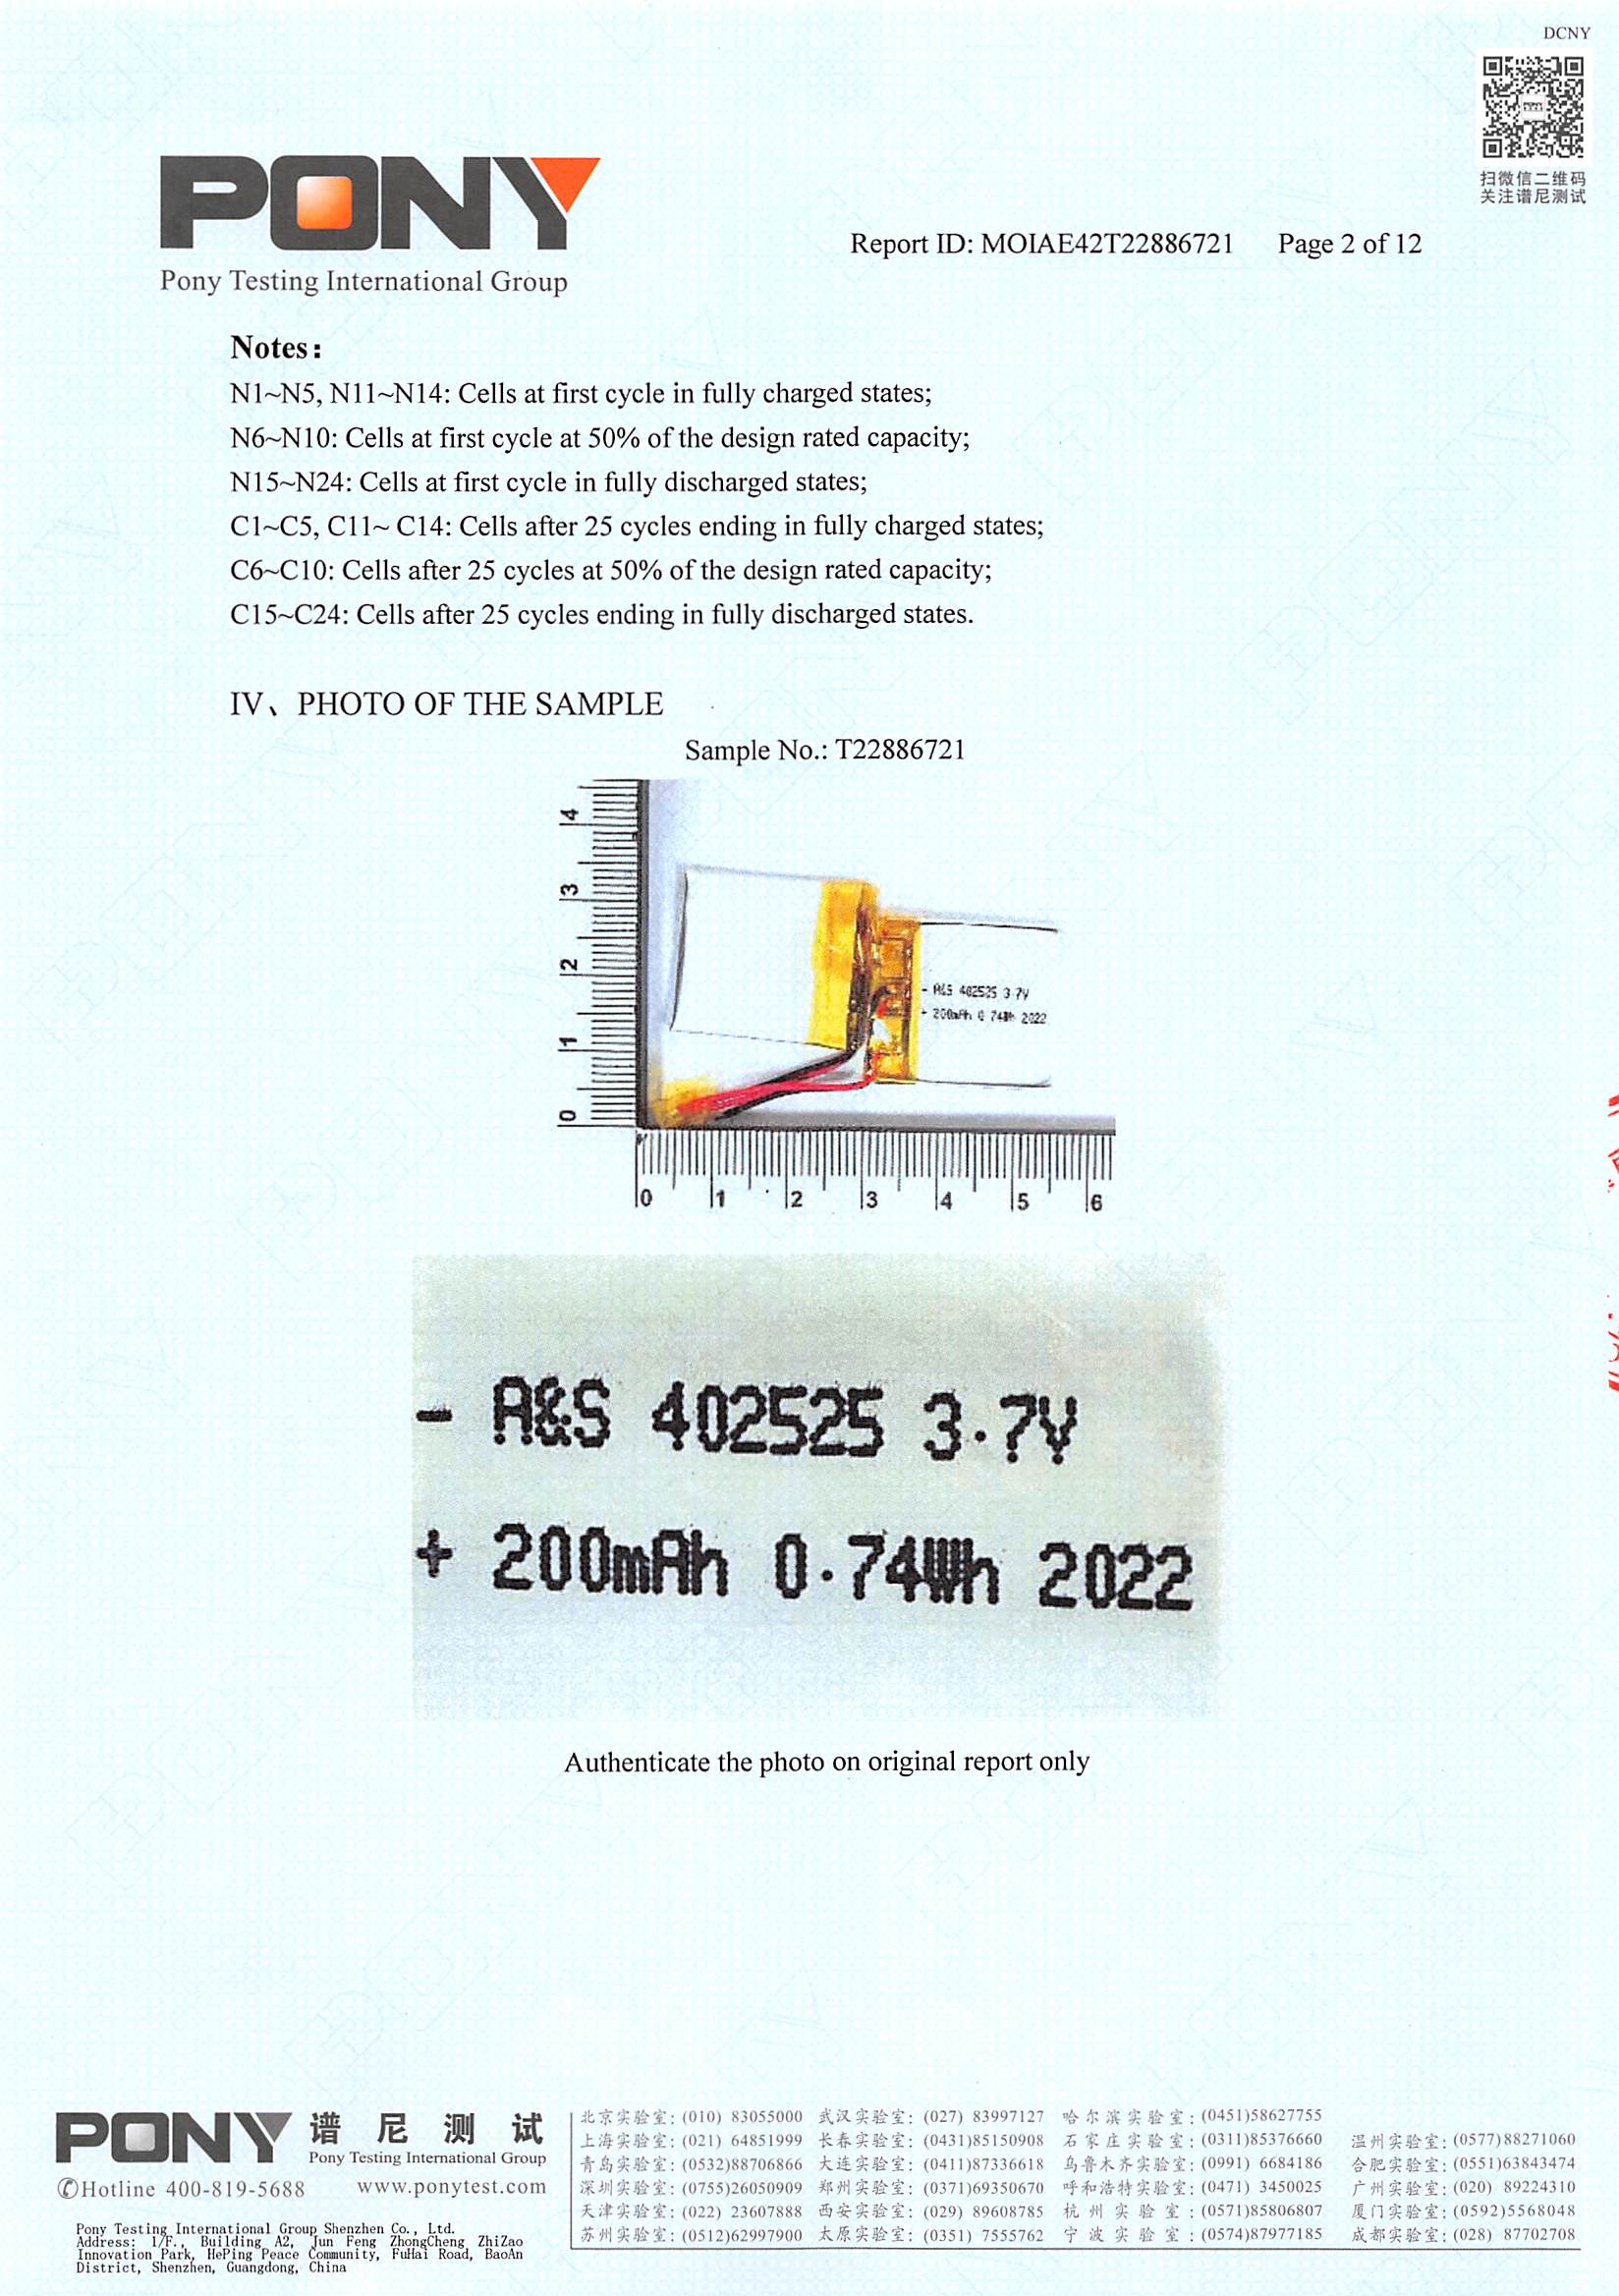 A&S Power 402525-3.7V-200mAh UN38.3 Test Report 